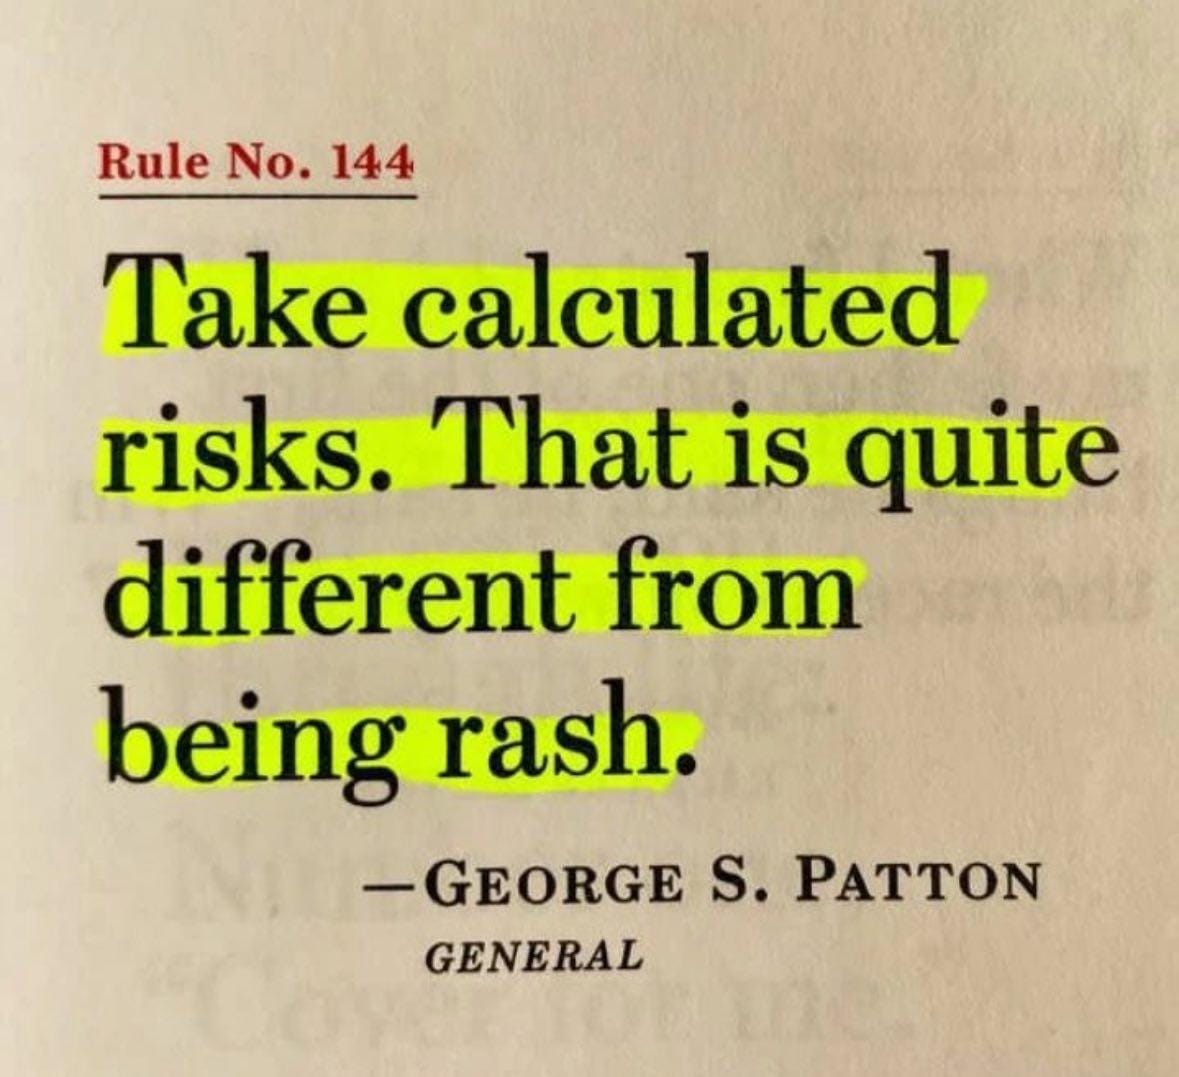 Take Calculated risks. 🌻#MotivationalQuotes #motivational #PositiveEnergy #PositiveMindset #GrowthMindset